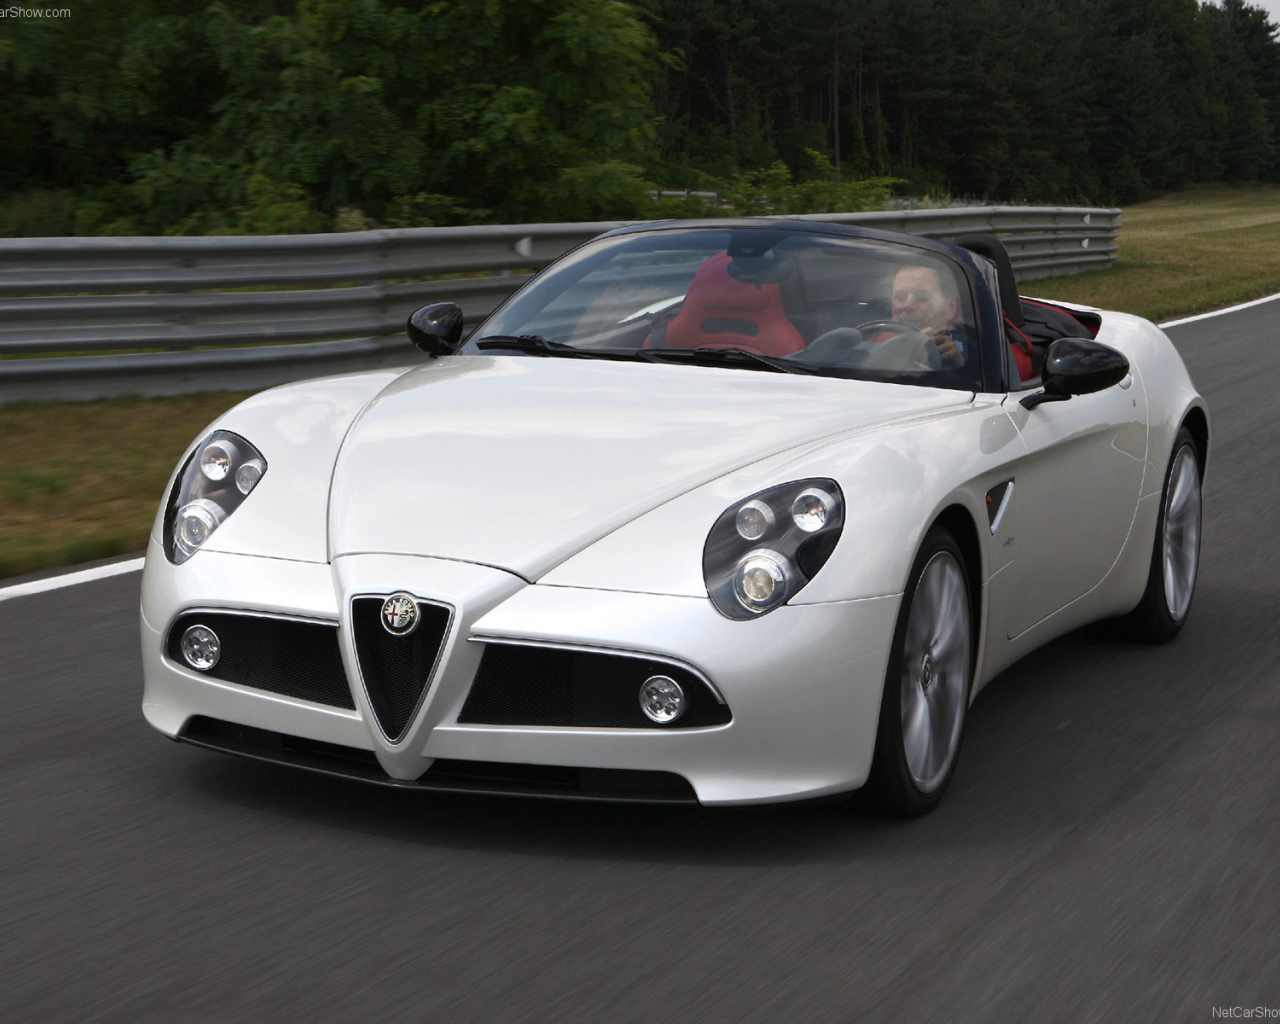 Автомобиль Alfa Romeo 8c spider на дороге